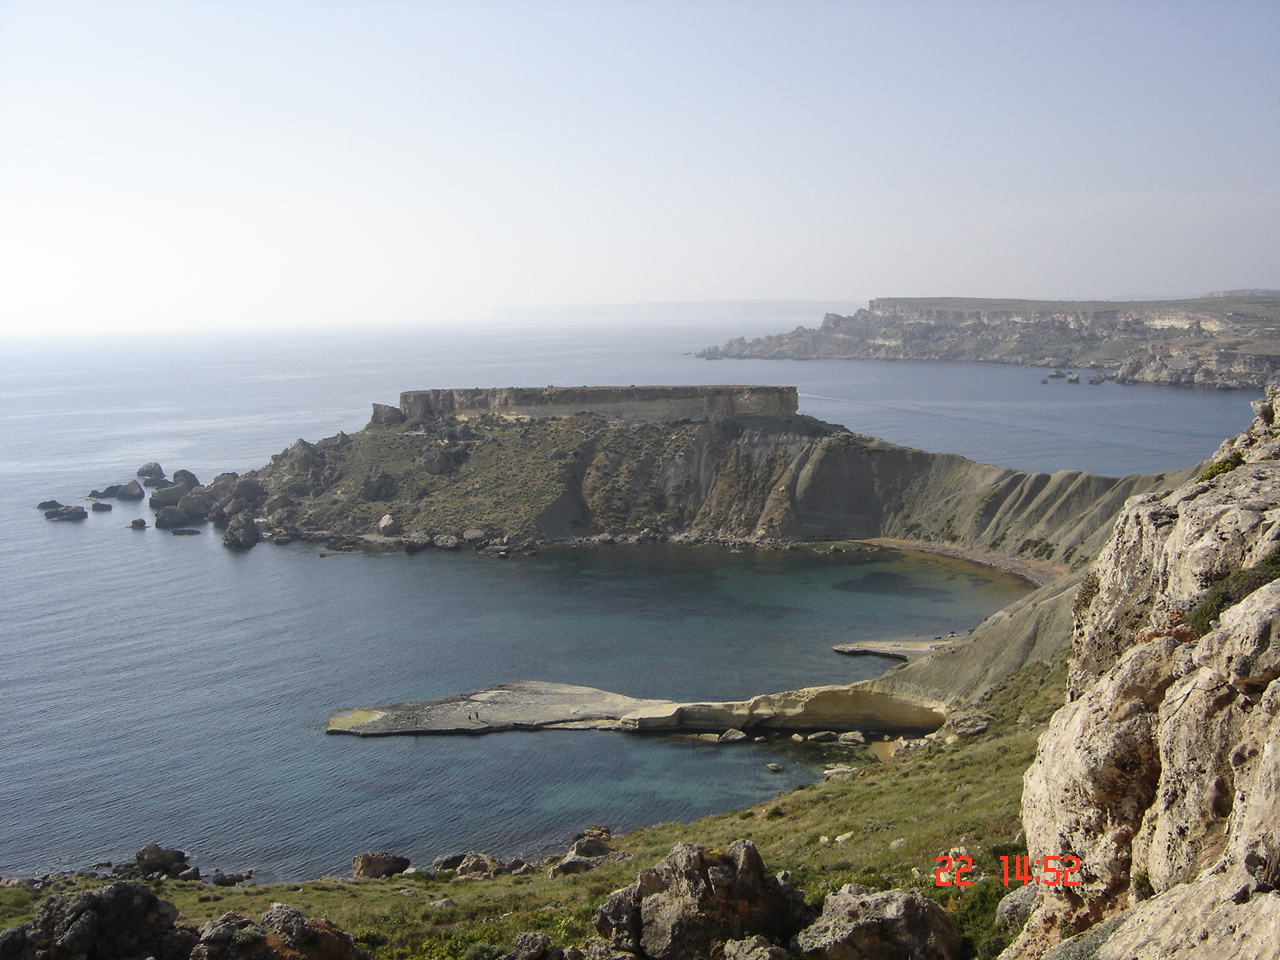 Malta Coastal walk
Near Golden Bay